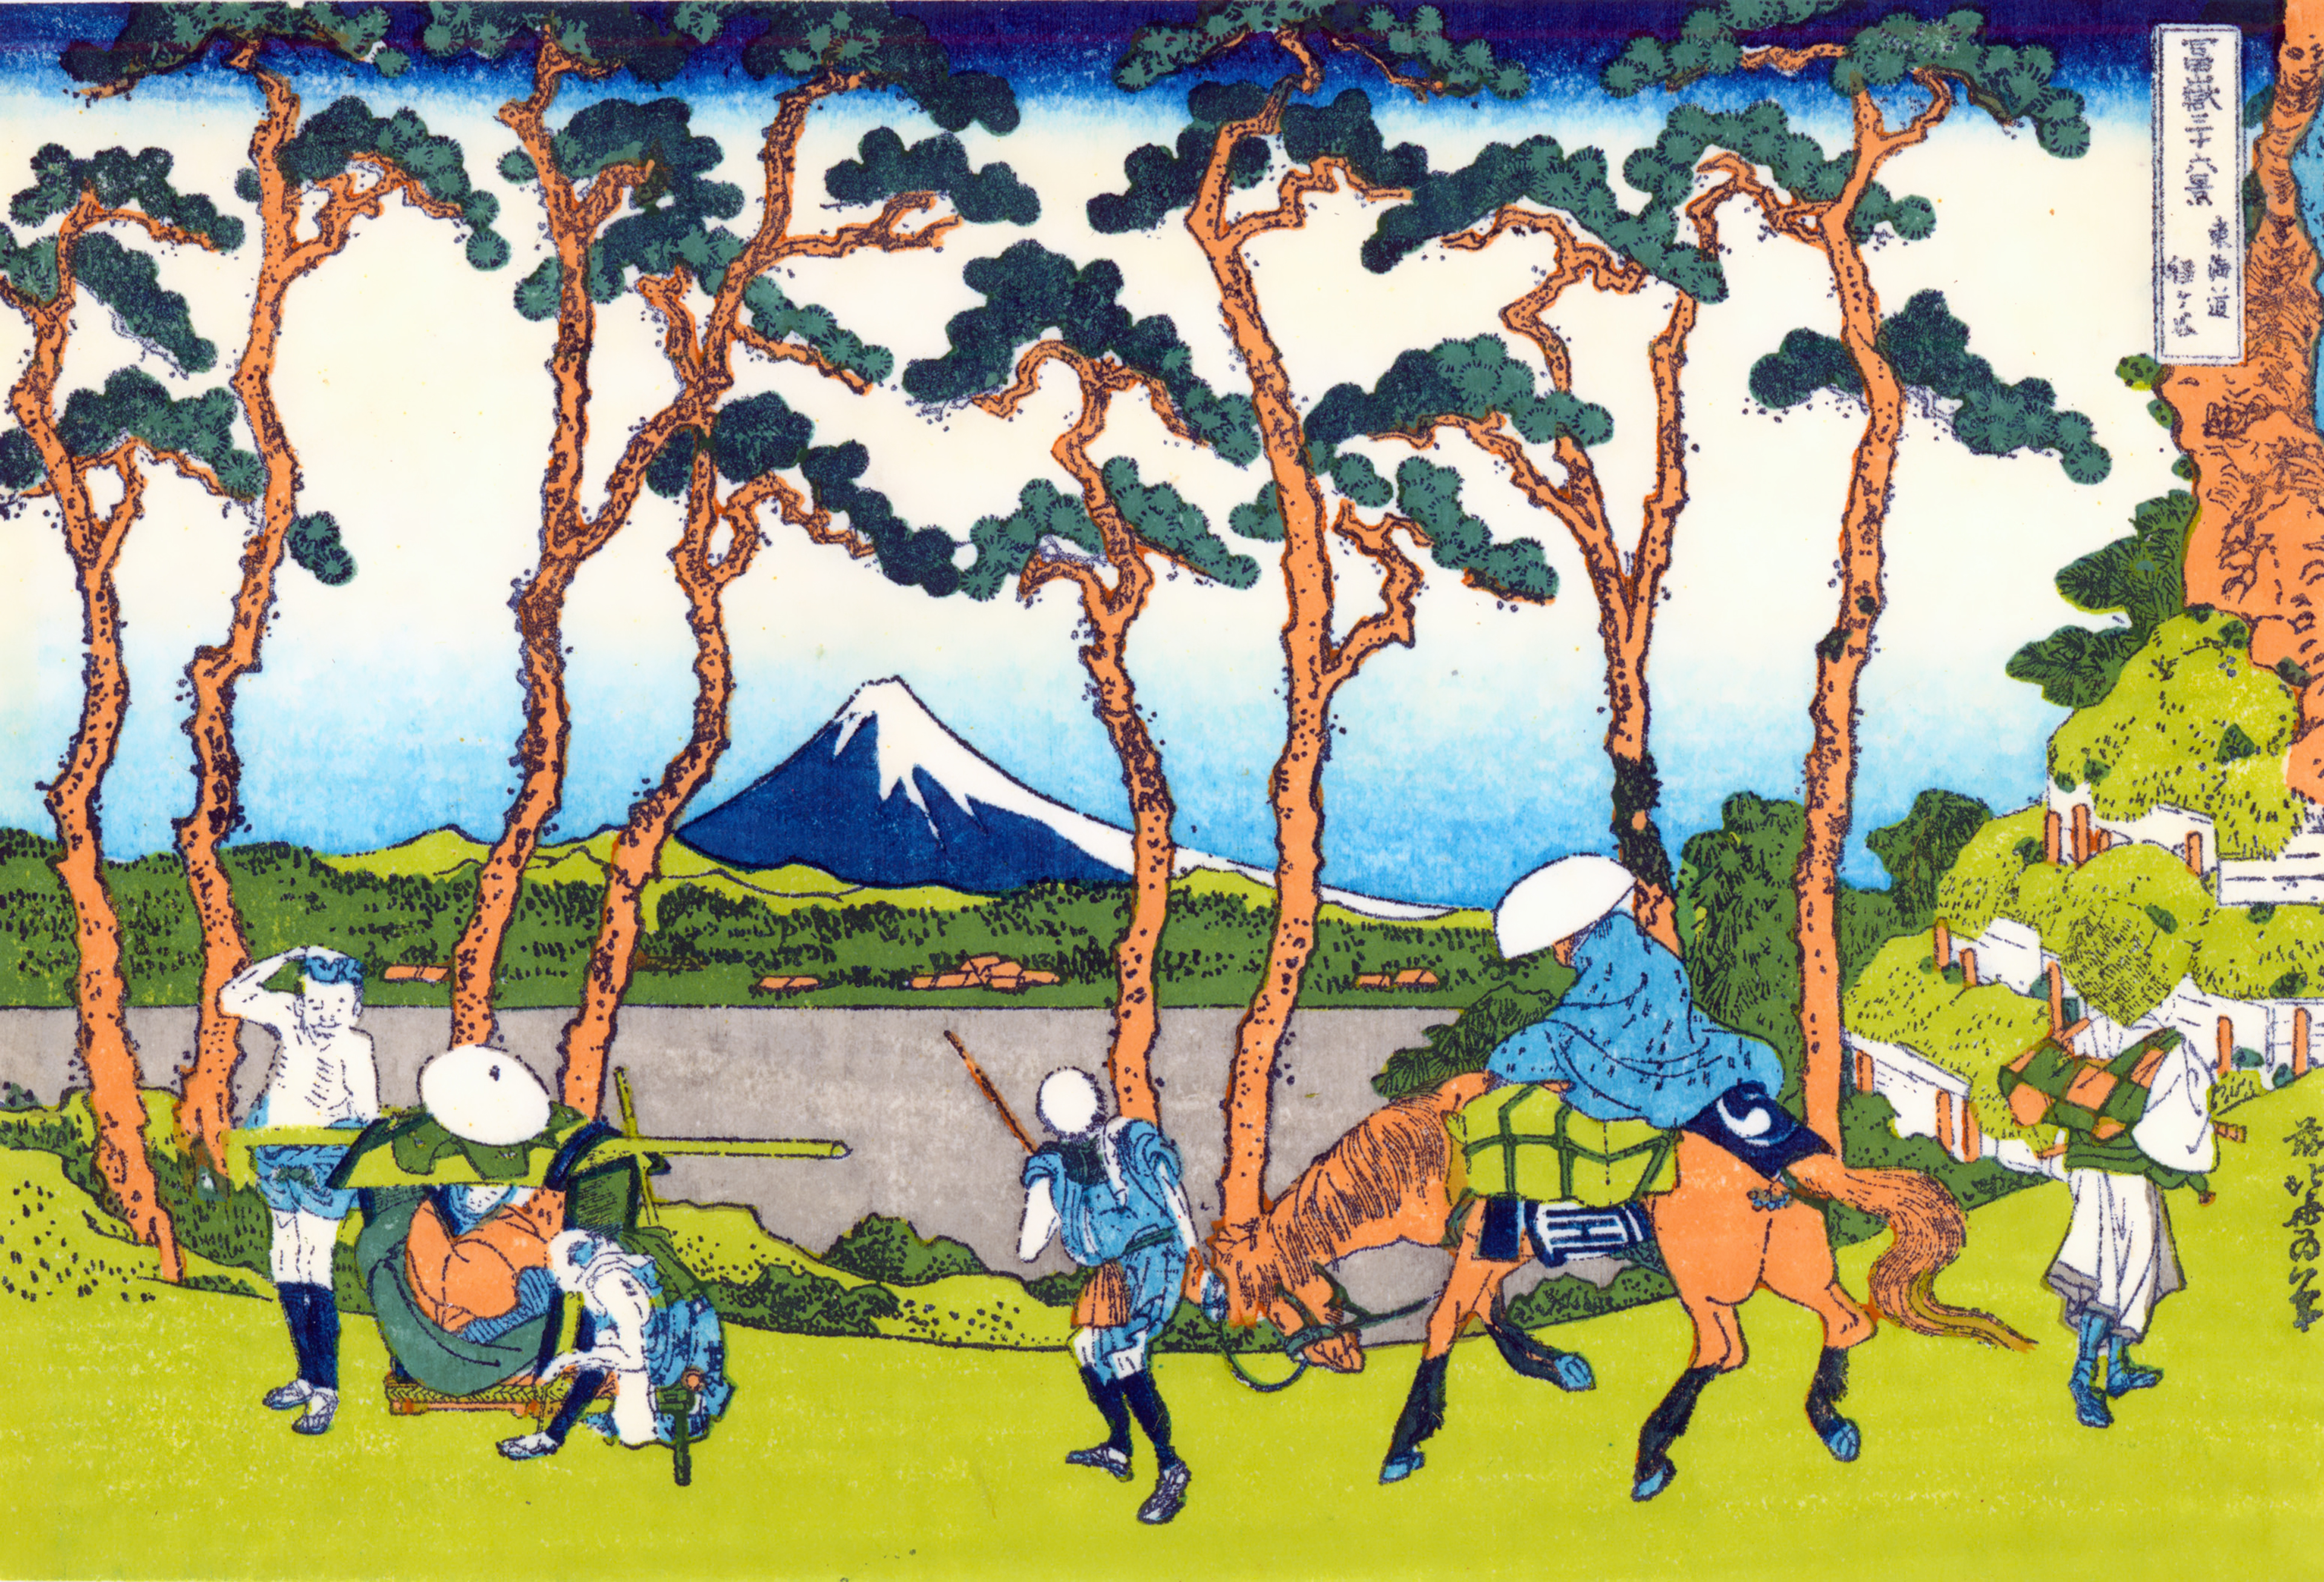 東海道程ヶ谷 とうかいどうほどがや 富嶽三十六景 葛飾北斎 壁紙画像 ミヤノーヴァ